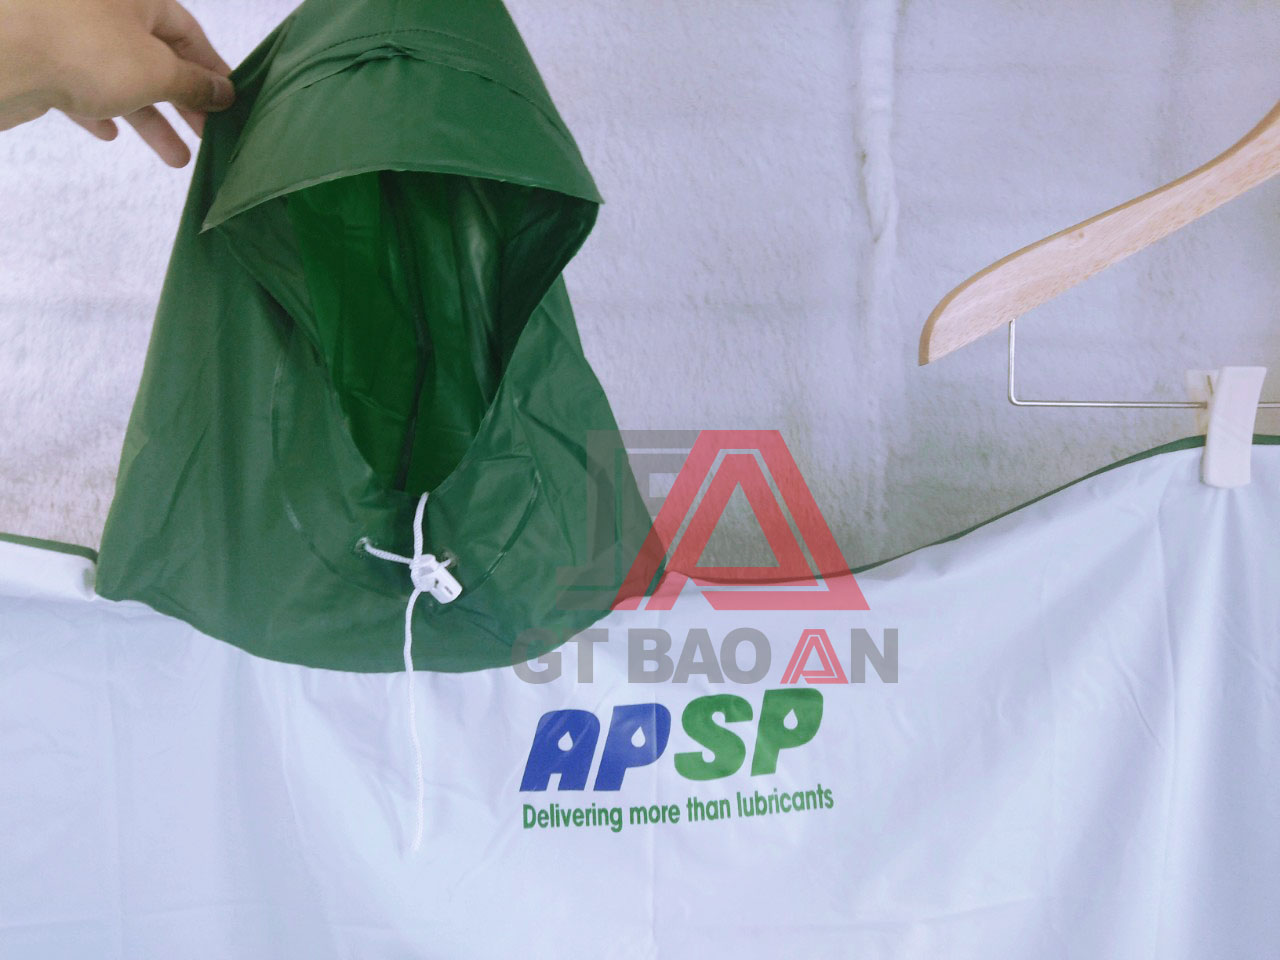 Áo mưa quà tặng công ty dầu nhớt Saigon Petro